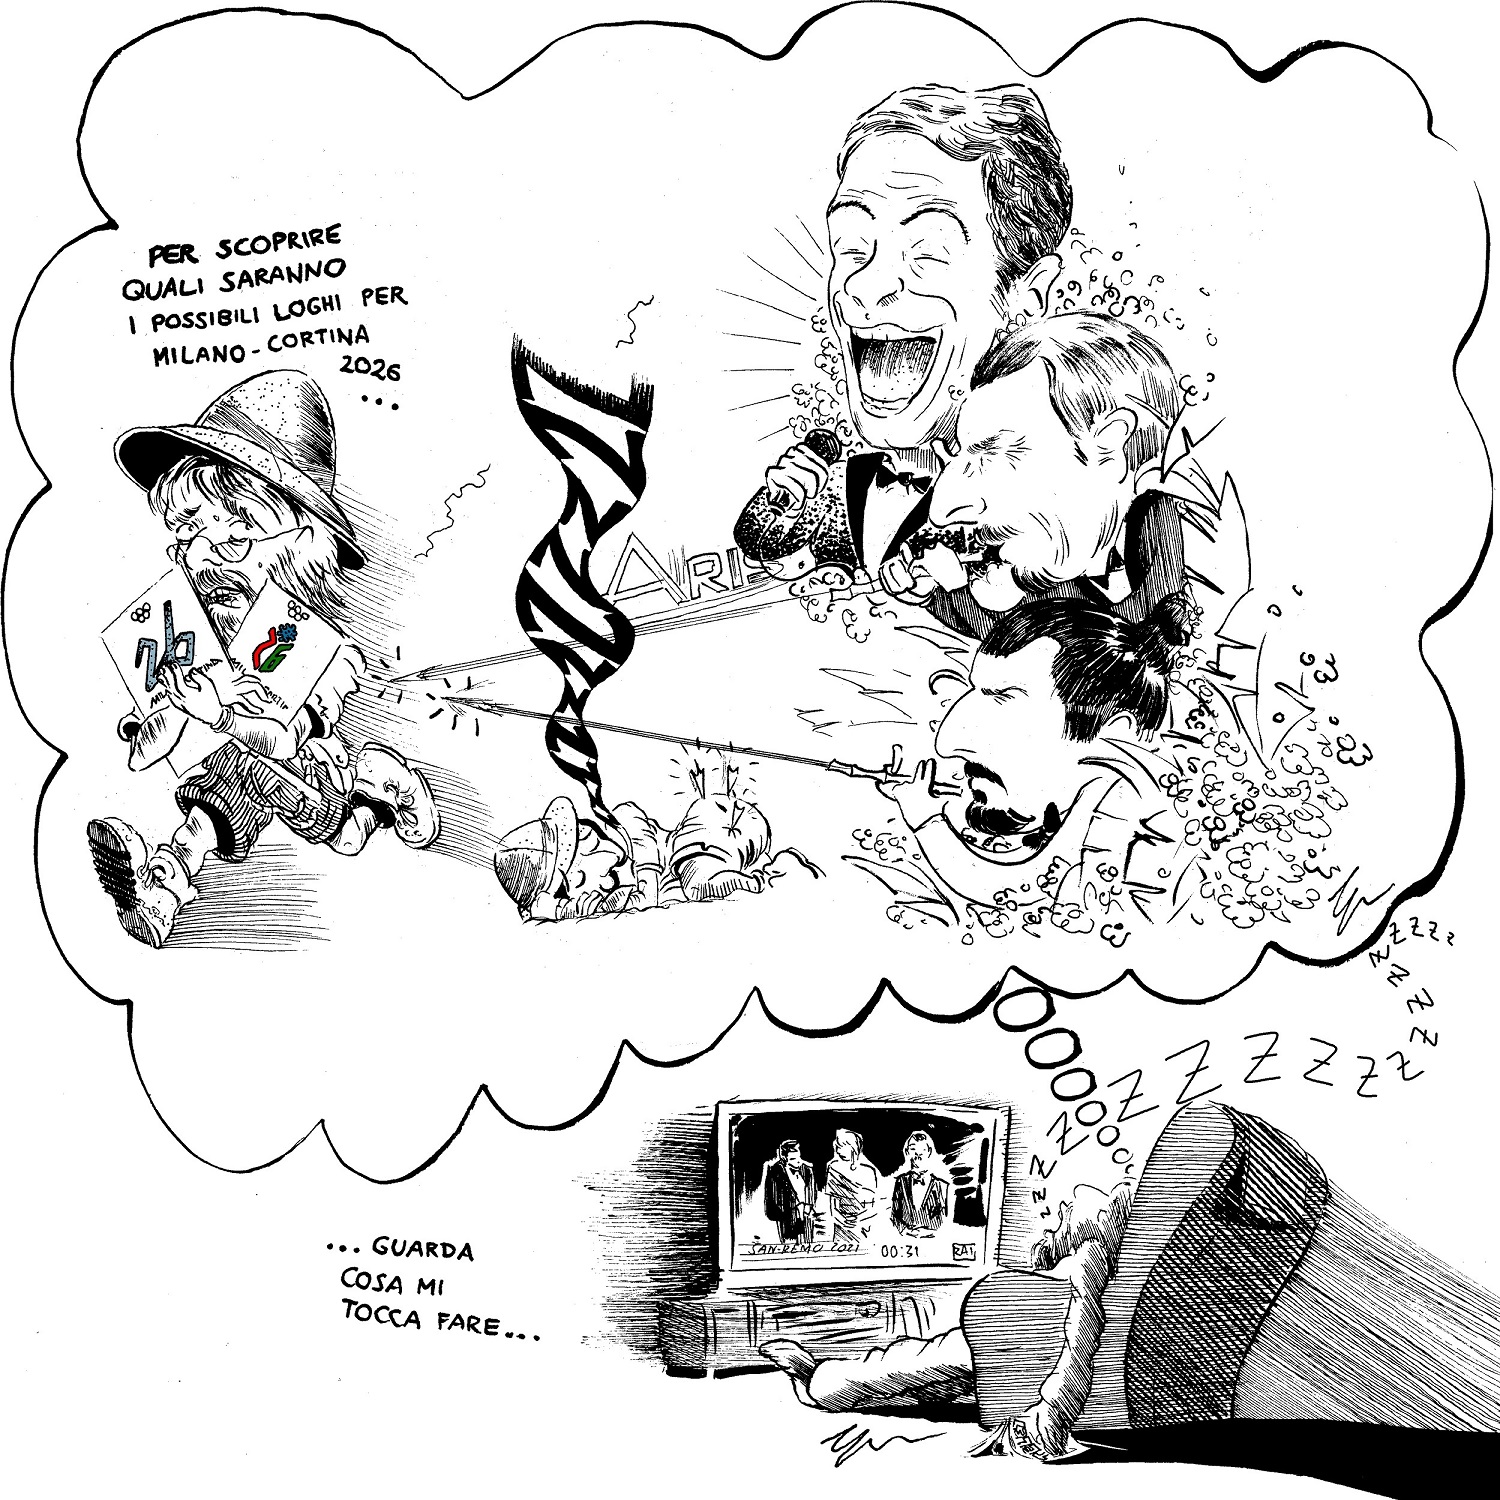 l'immagine è un disegno in bianco e nero dove si vede un uomo che si addormenta davanti alla tv; sopra di lui, un fumetto relativo alla presentazione dei due loghi di Milano Cortina 2026 presentati al festival di Sanremo